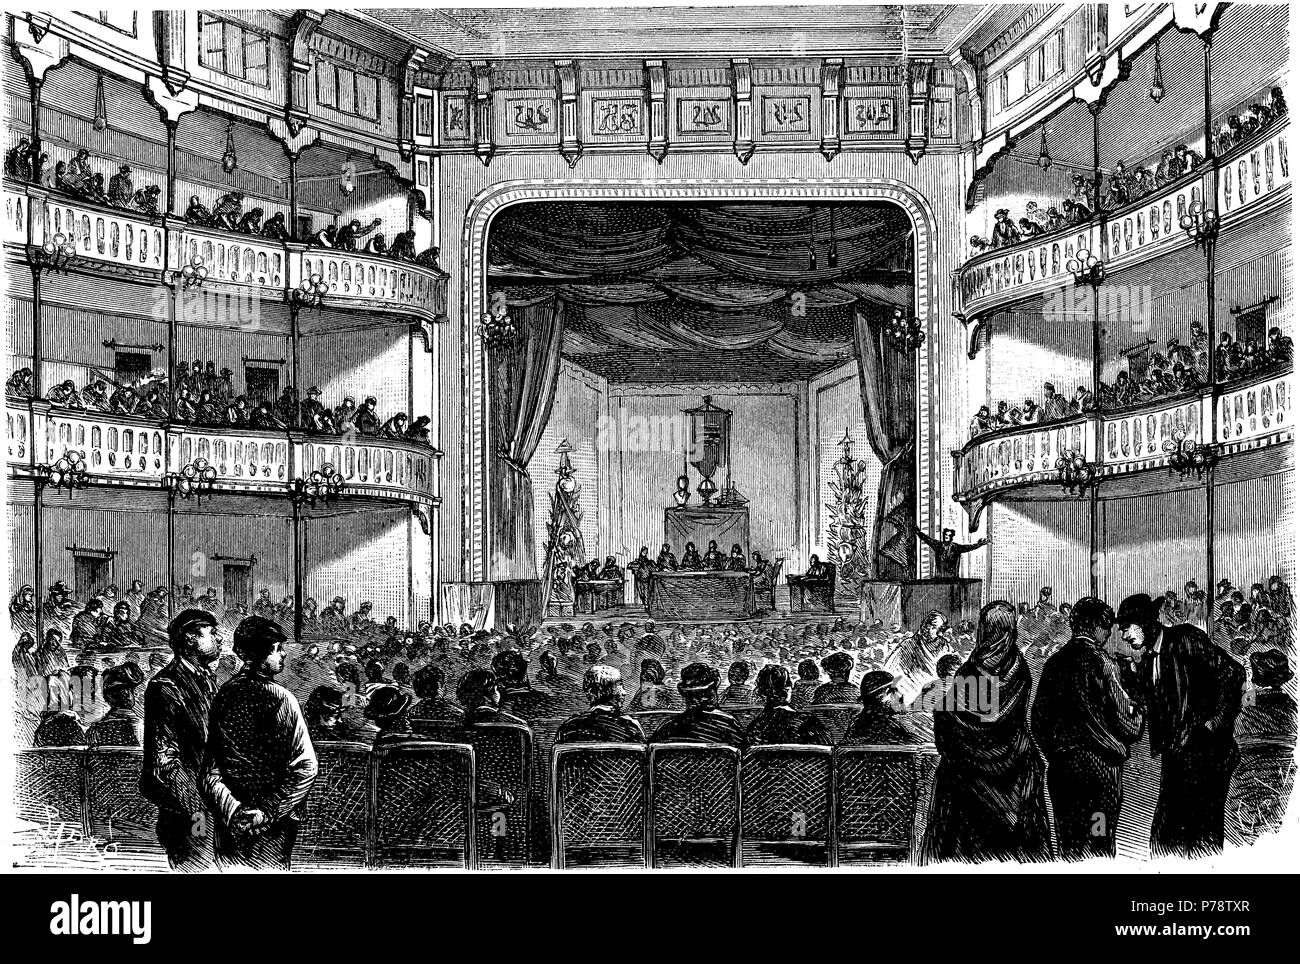 Barcelona. Revolución de 1868. Congreso de obreros celebrado El 20 de Oct de 1870. Grabado de 1870. Stockfoto